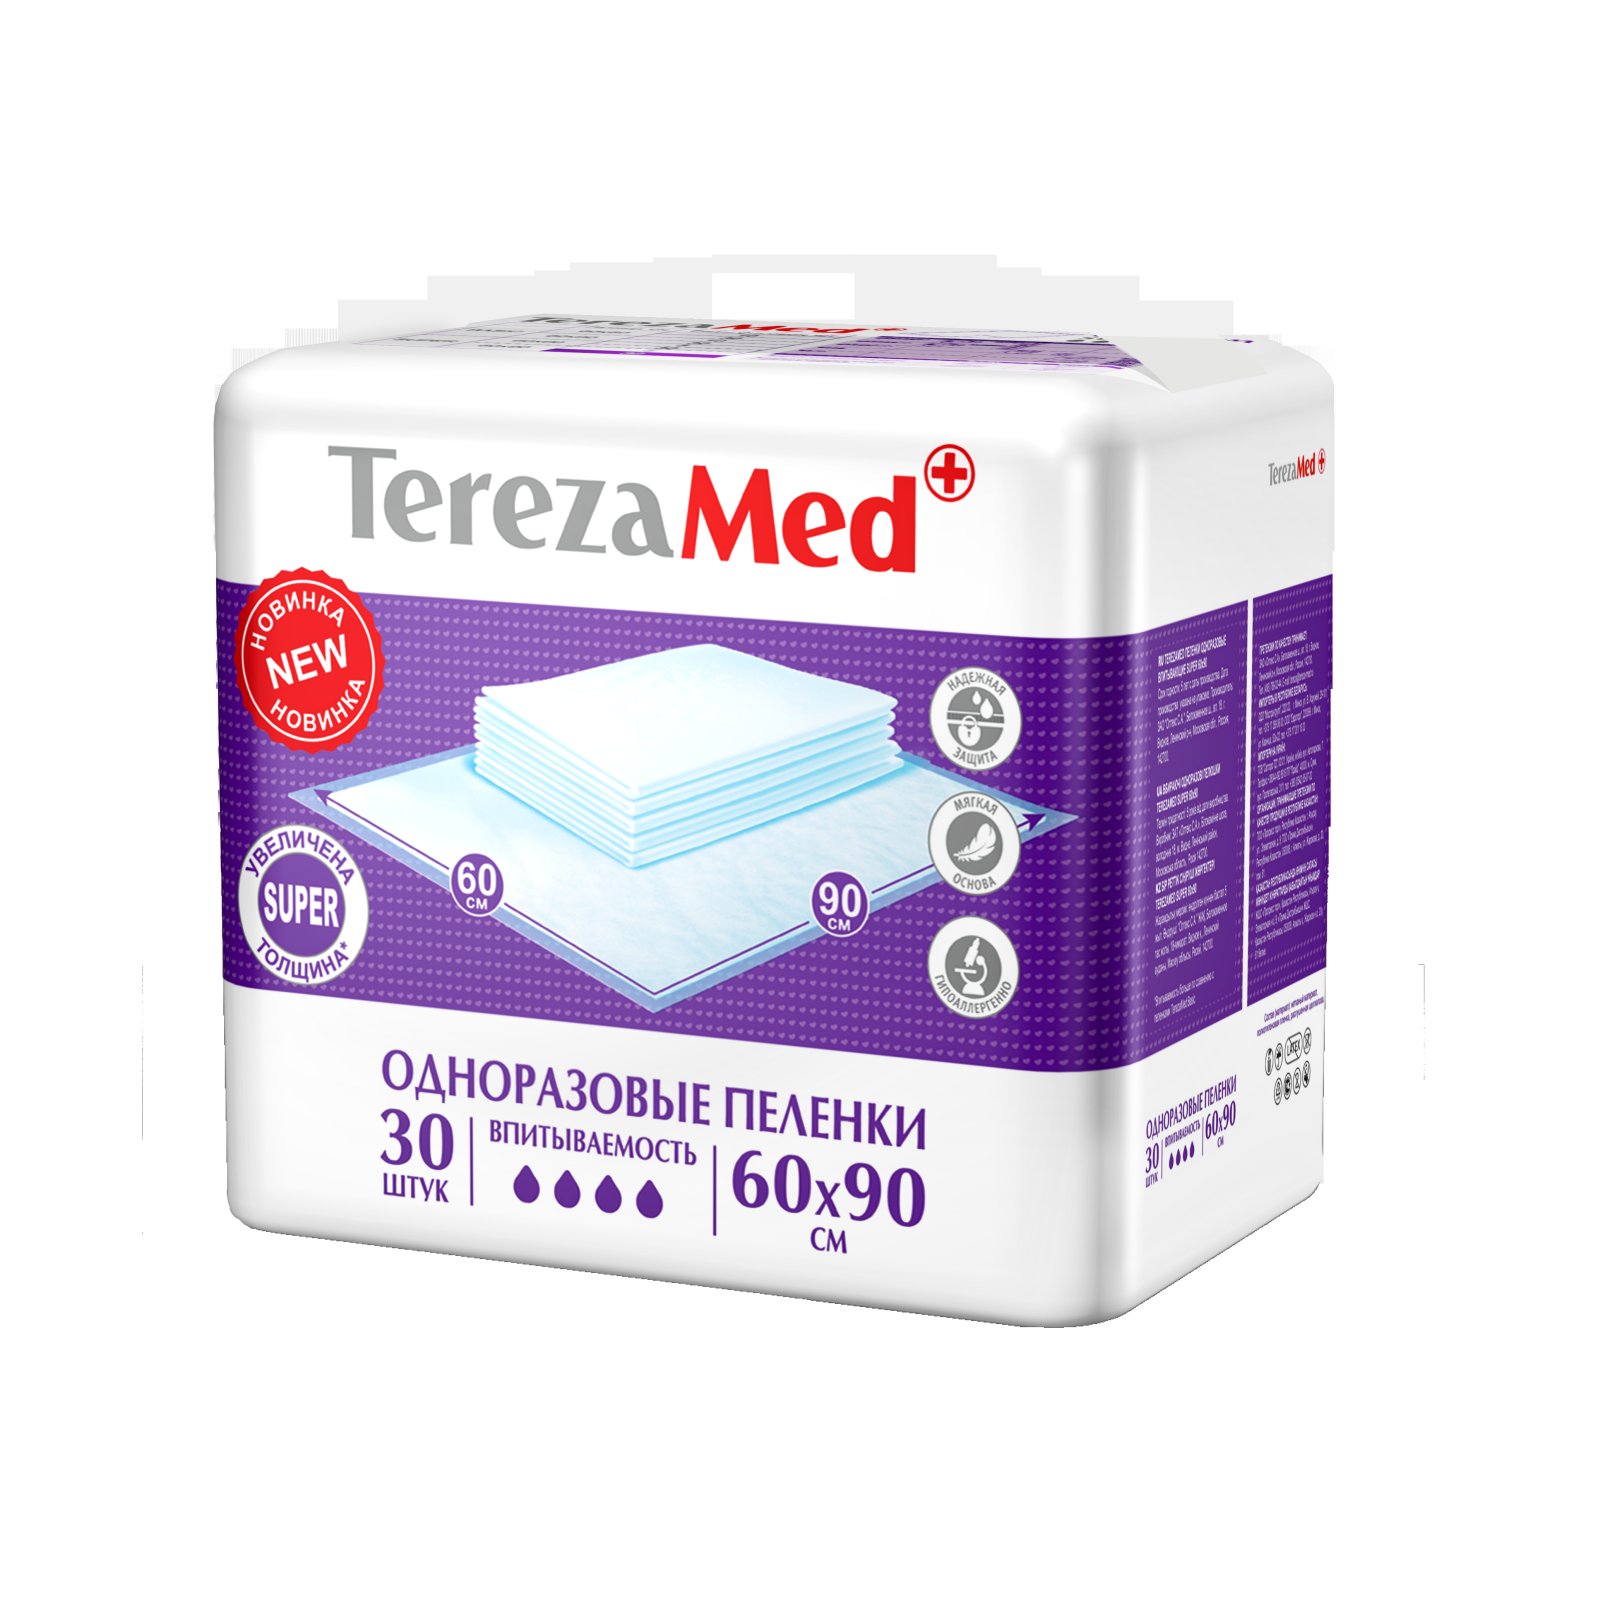 Tereza Med    Super 6090 .30 (NEW) - Tereza16825   TerezaMed           .     ,     .      ,   .      ,         .             .   TerezaMed      ().            .  : 6090.   : 30 . : 1700 (+5%).